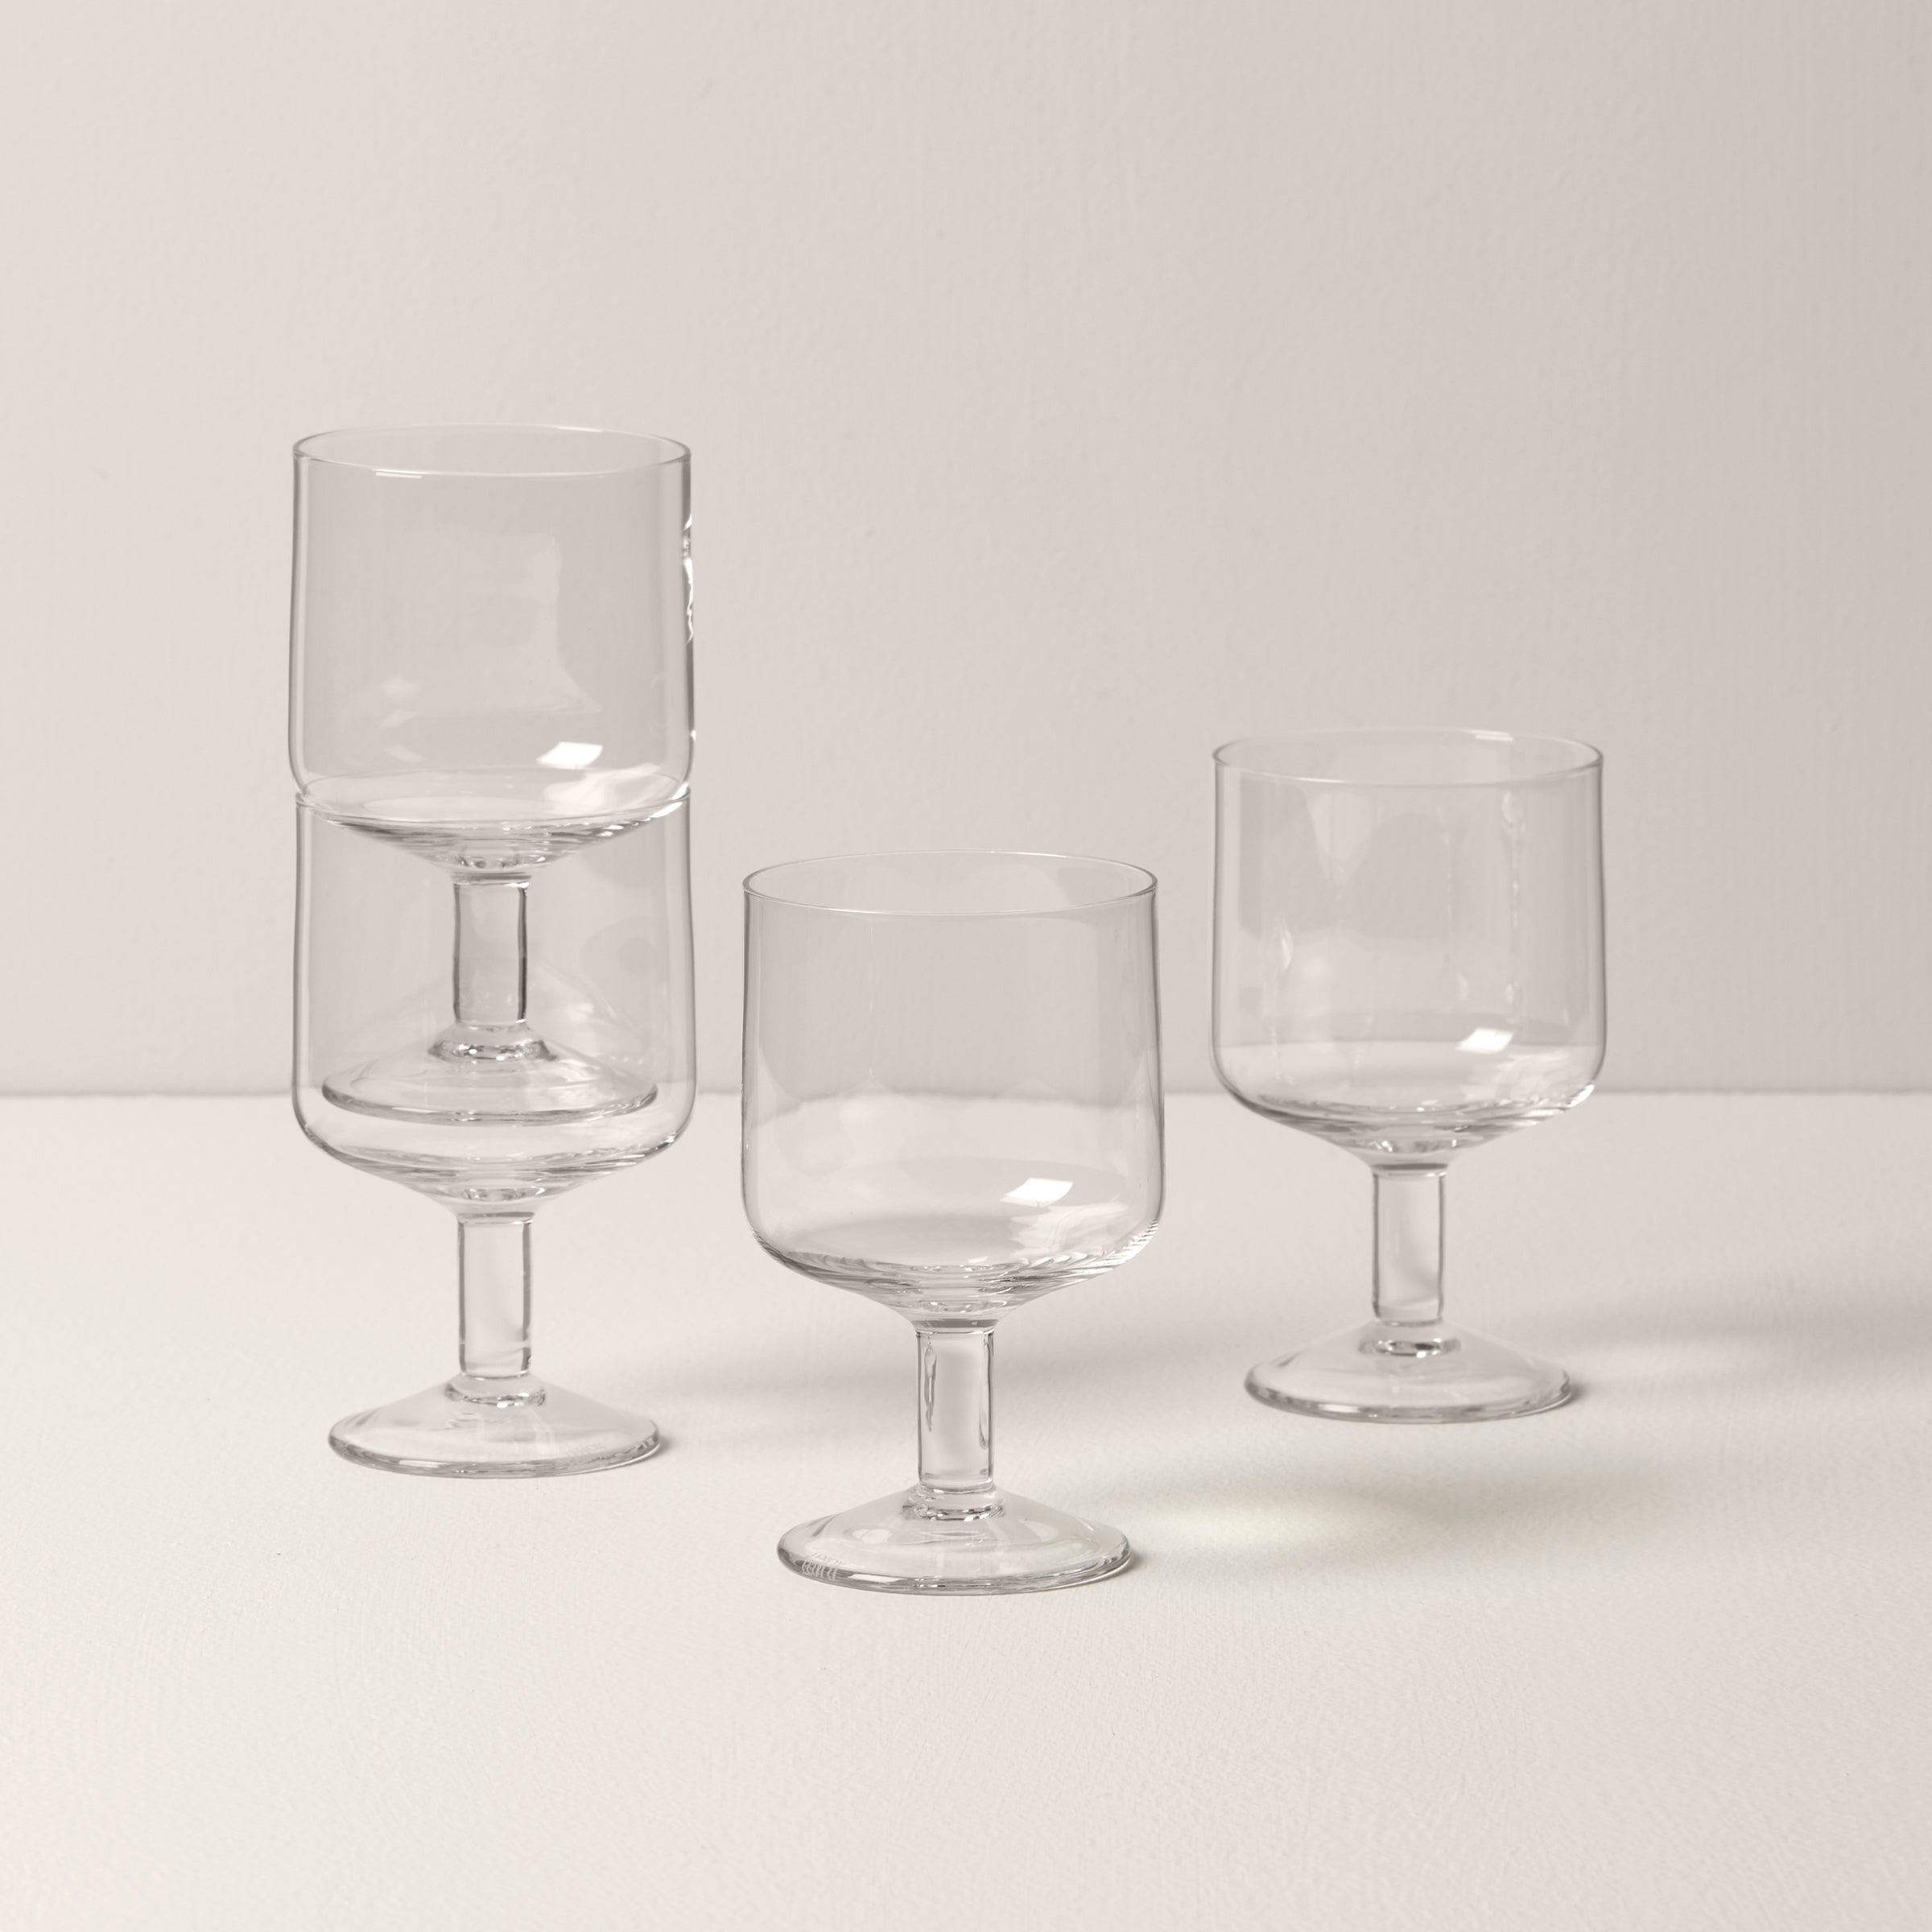 Buy Set of 4 Tribeca Stackable Wine Glasses beige online